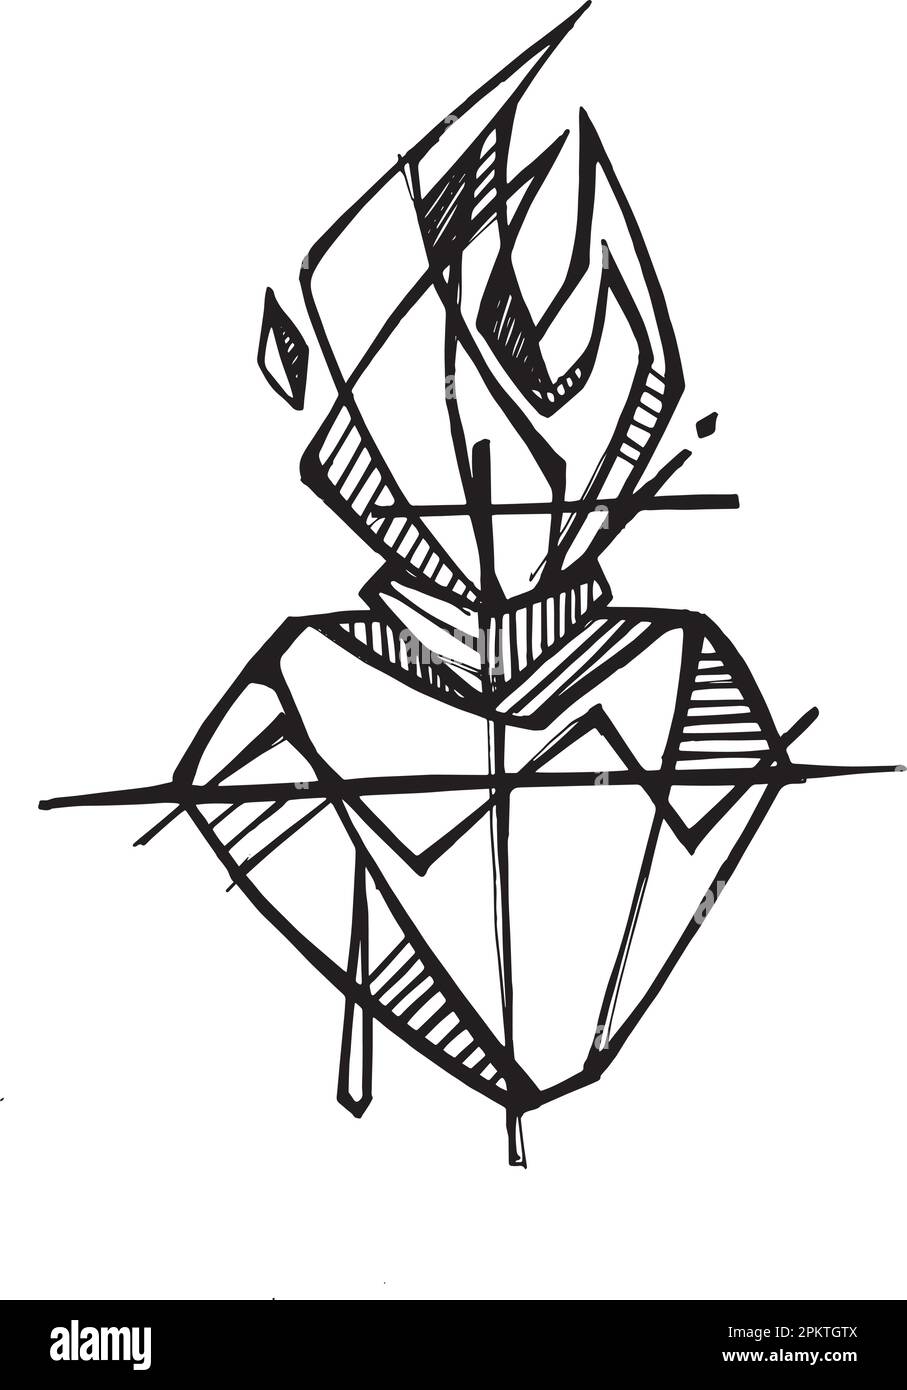 Disegno vettoriale disegnato a mano o disegno del Sacro cuore Illustrazione Vettoriale